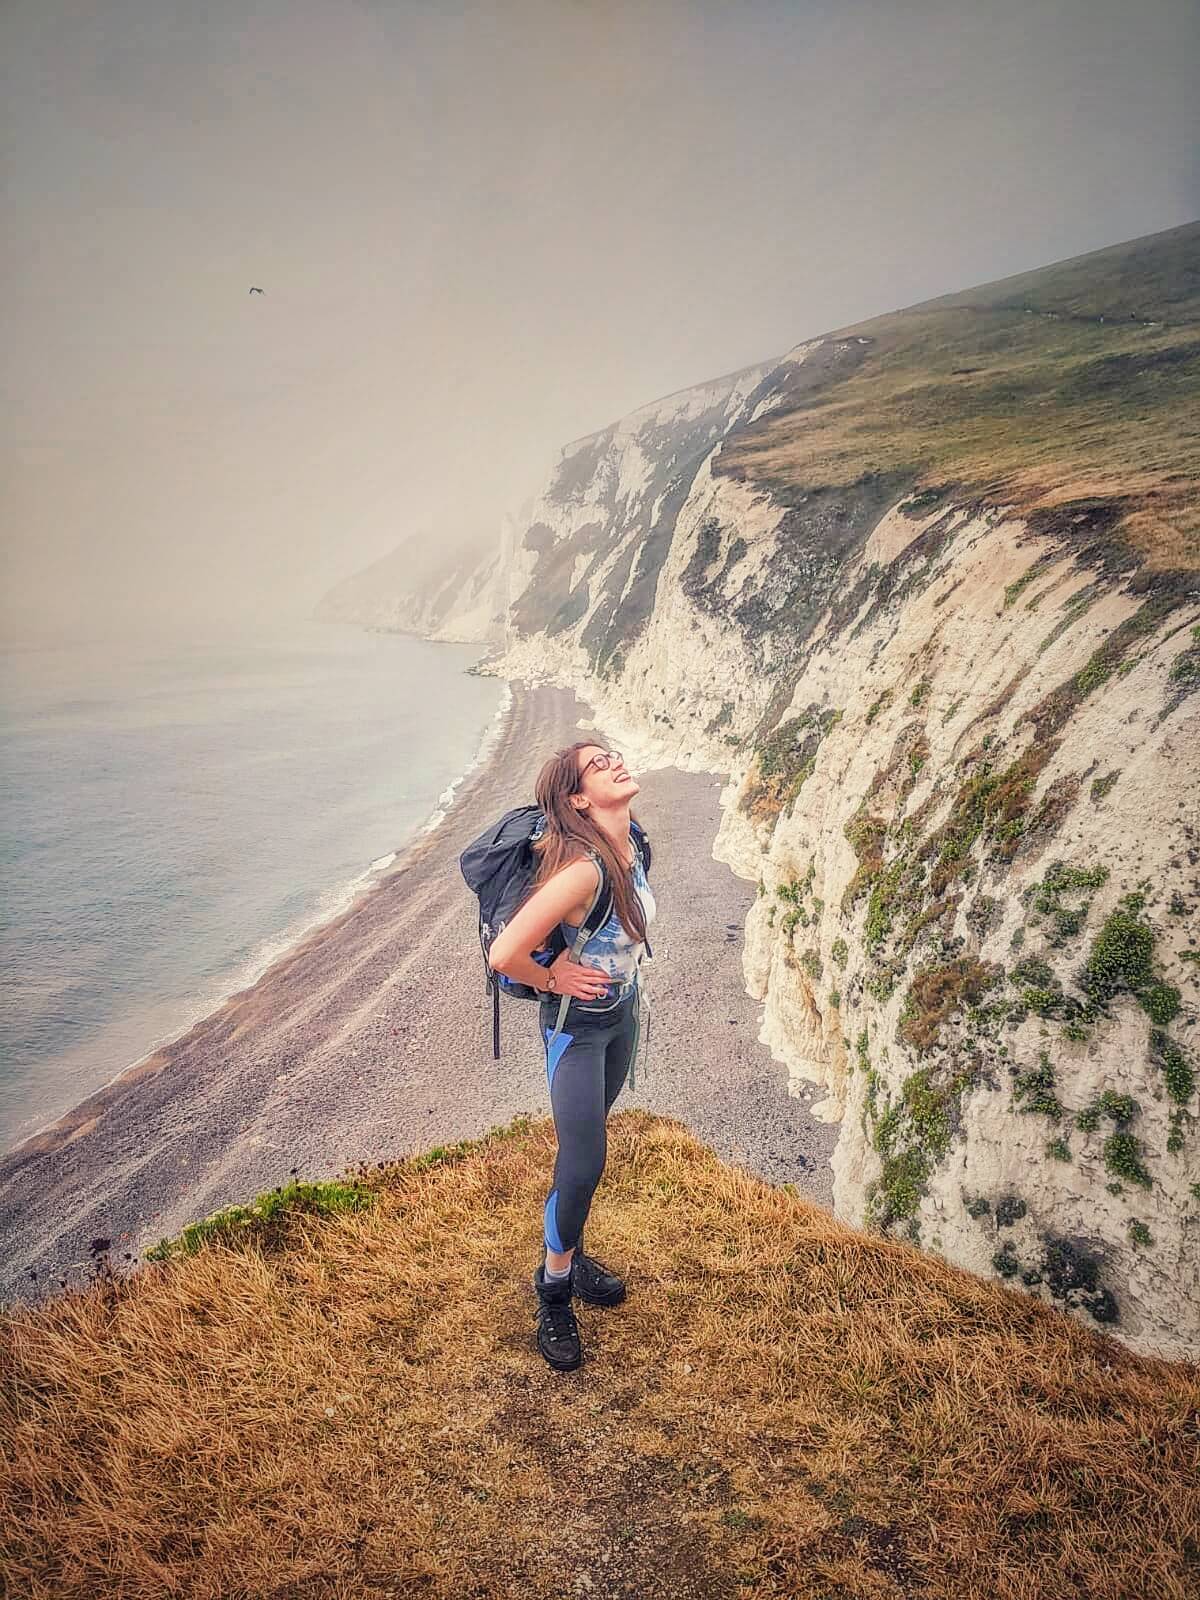 Laura hiking a bleary UK coastline